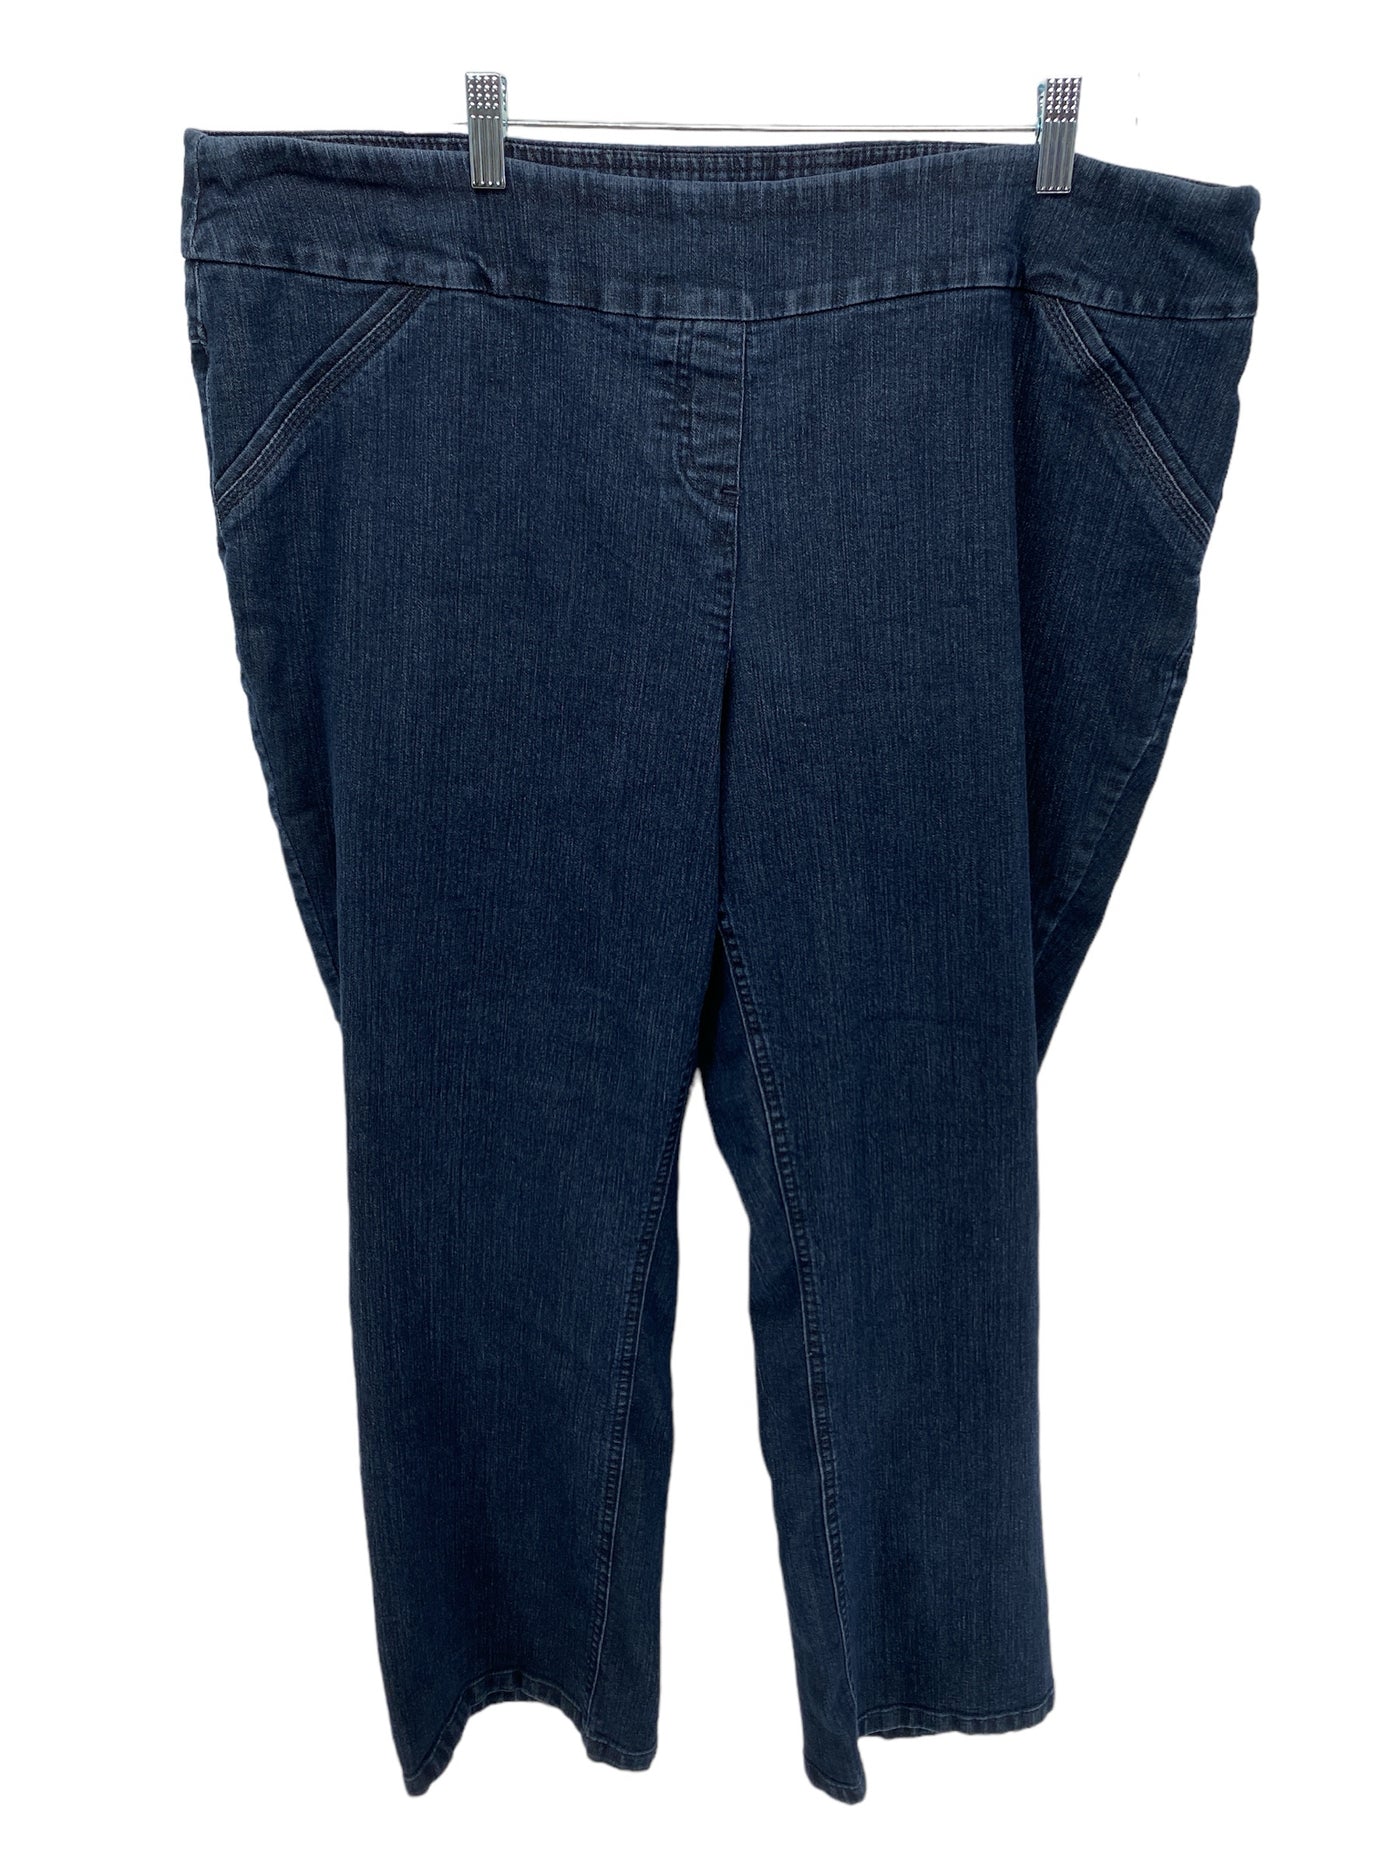 Westbound Women Size 22W Denim CD Jeans